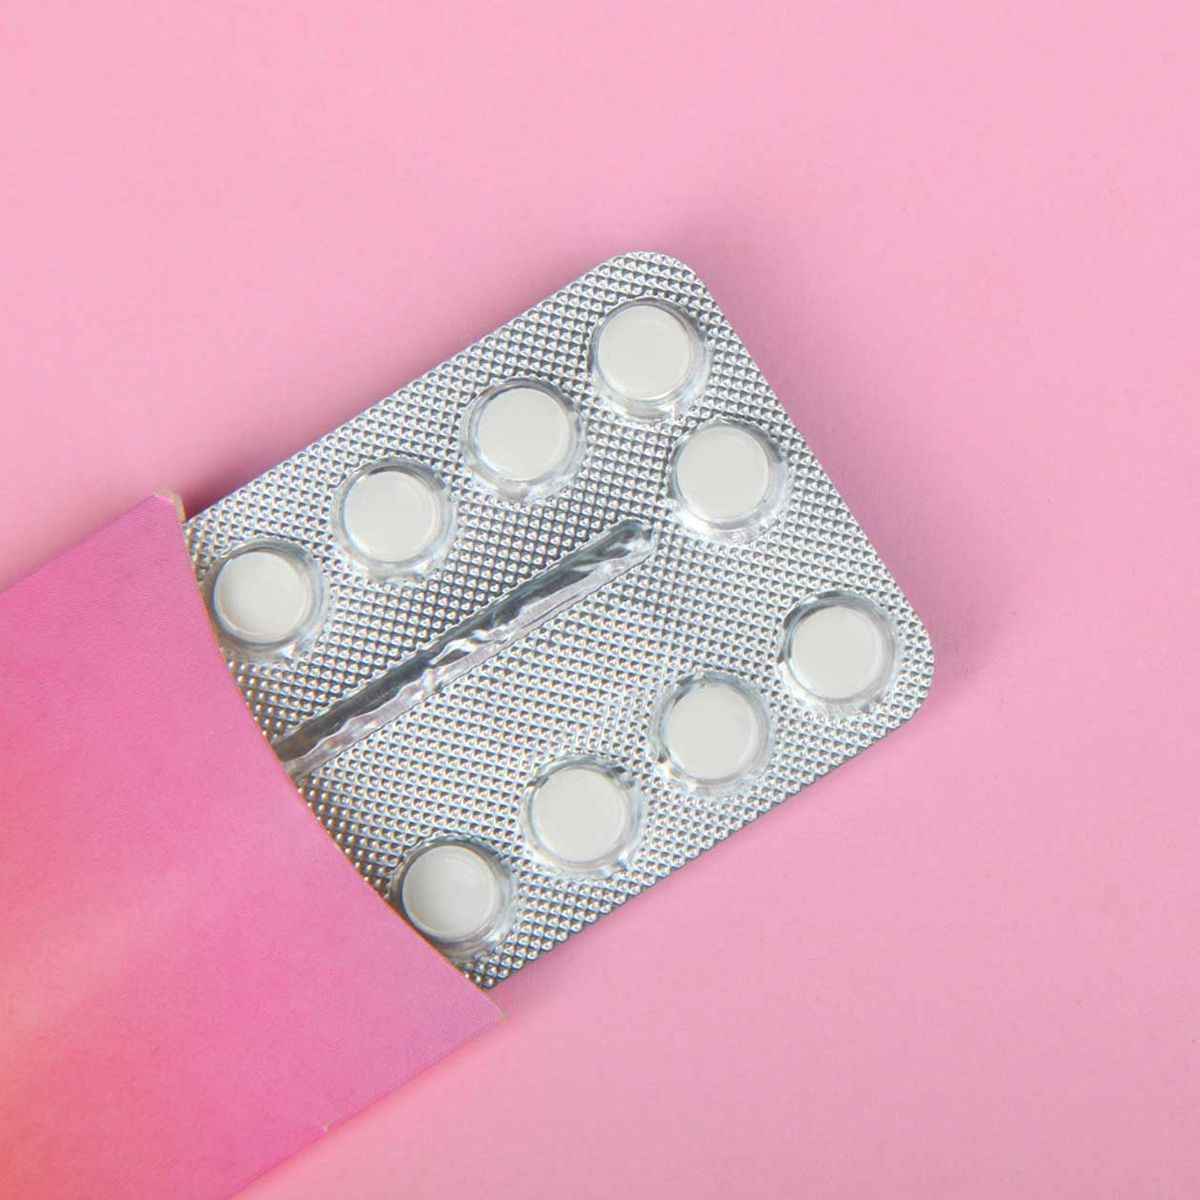 Pille durchnehmen: Wie schädlich ist das für Frauen?